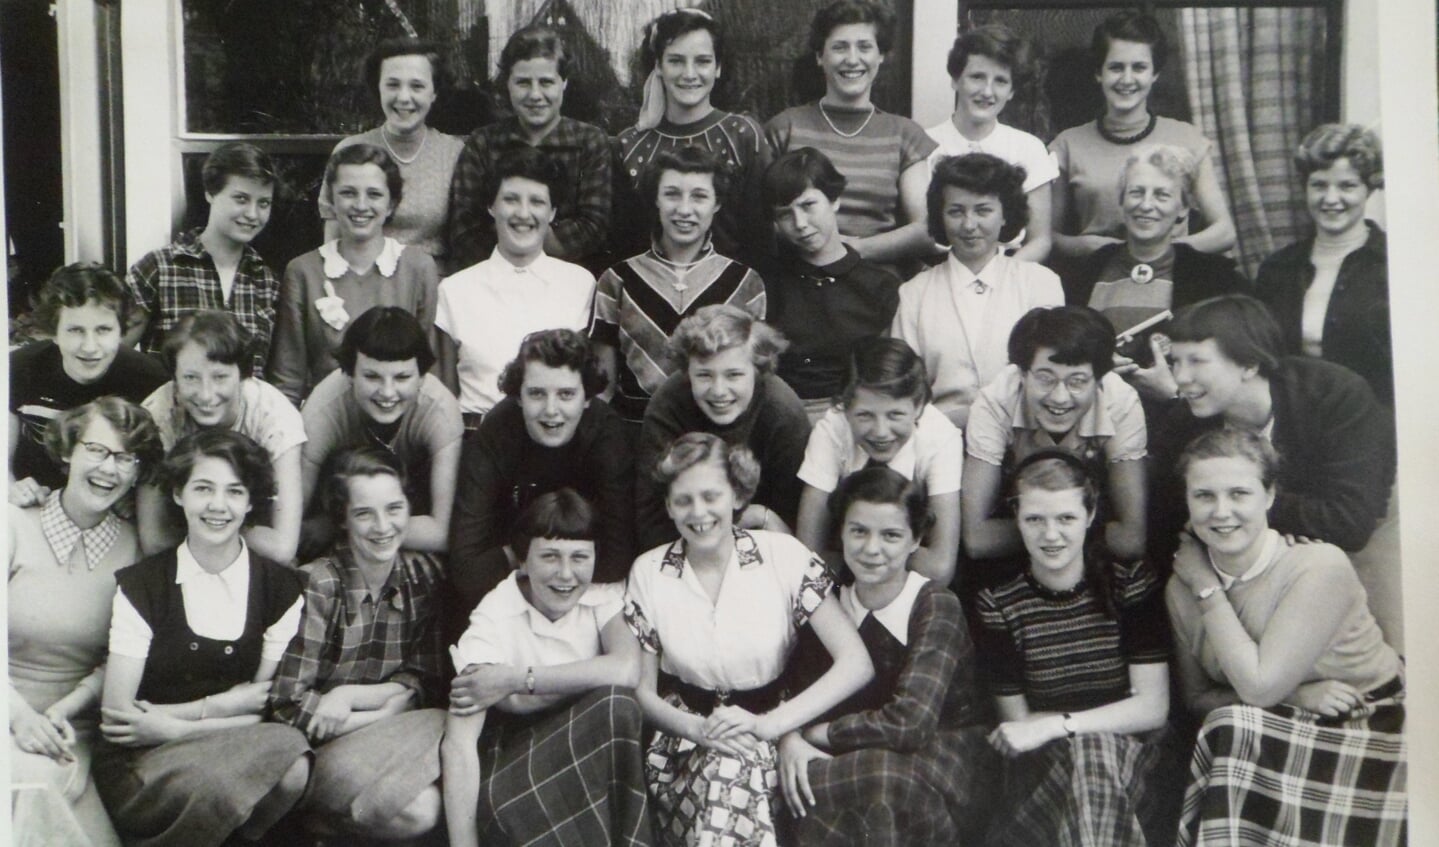 Een klassenfoto van de meiden van de Antonius-mulo uit 1953